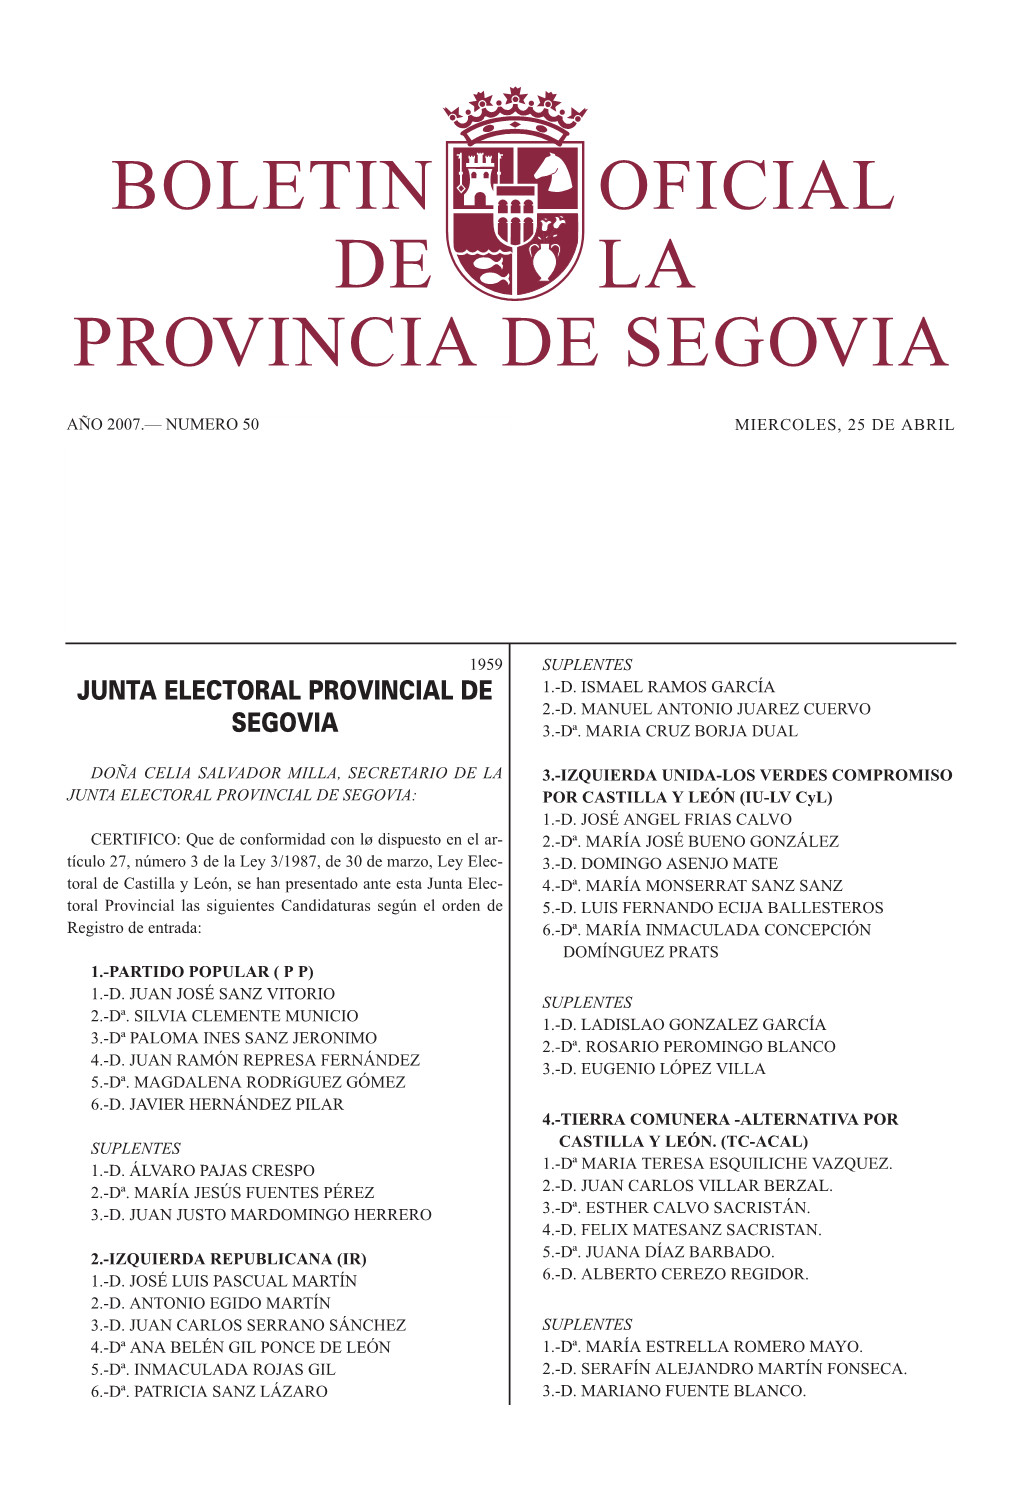 JUNTA ELECTORAL PROVINCIAL DE SEGOVIA: POR CASTILLA Y LEÓN (IU-LV Cyl) 1.-D